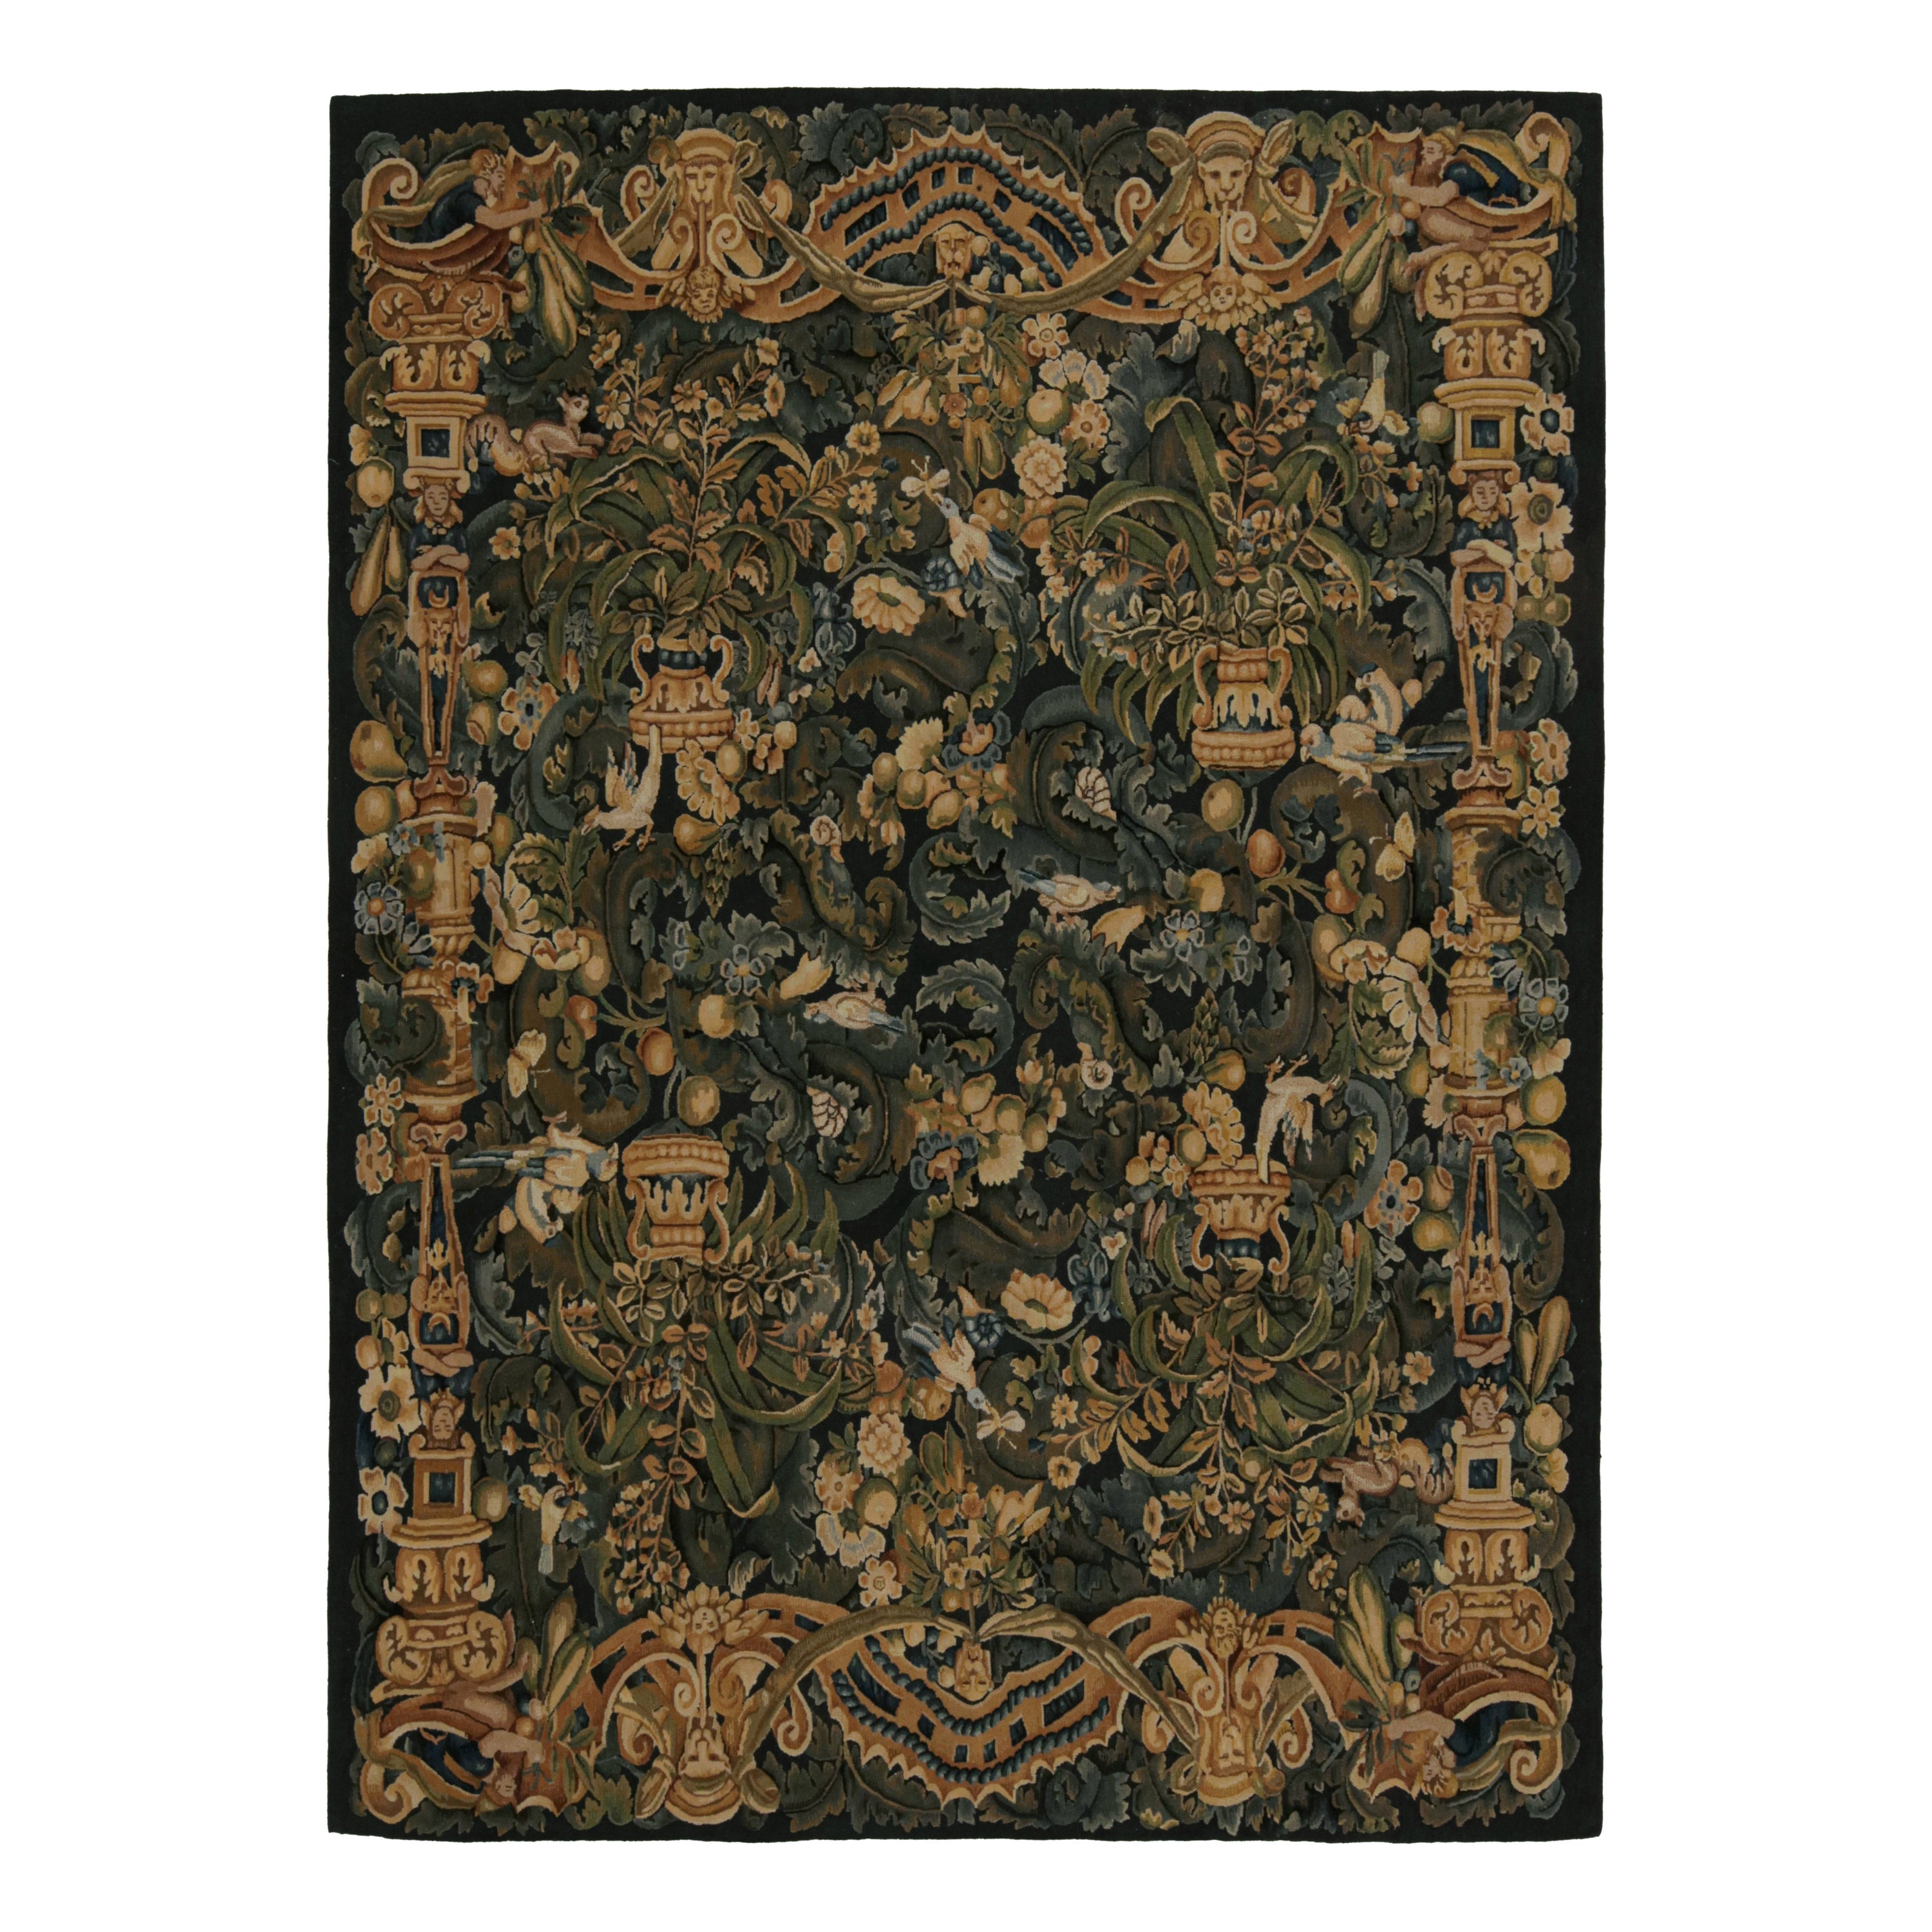 Rug & Kilim's European Tudor Flatweave Rug with Floral Patterns and Pictorials (tapis européen Tudor à armure plate avec motifs floraux et pictogrammes)